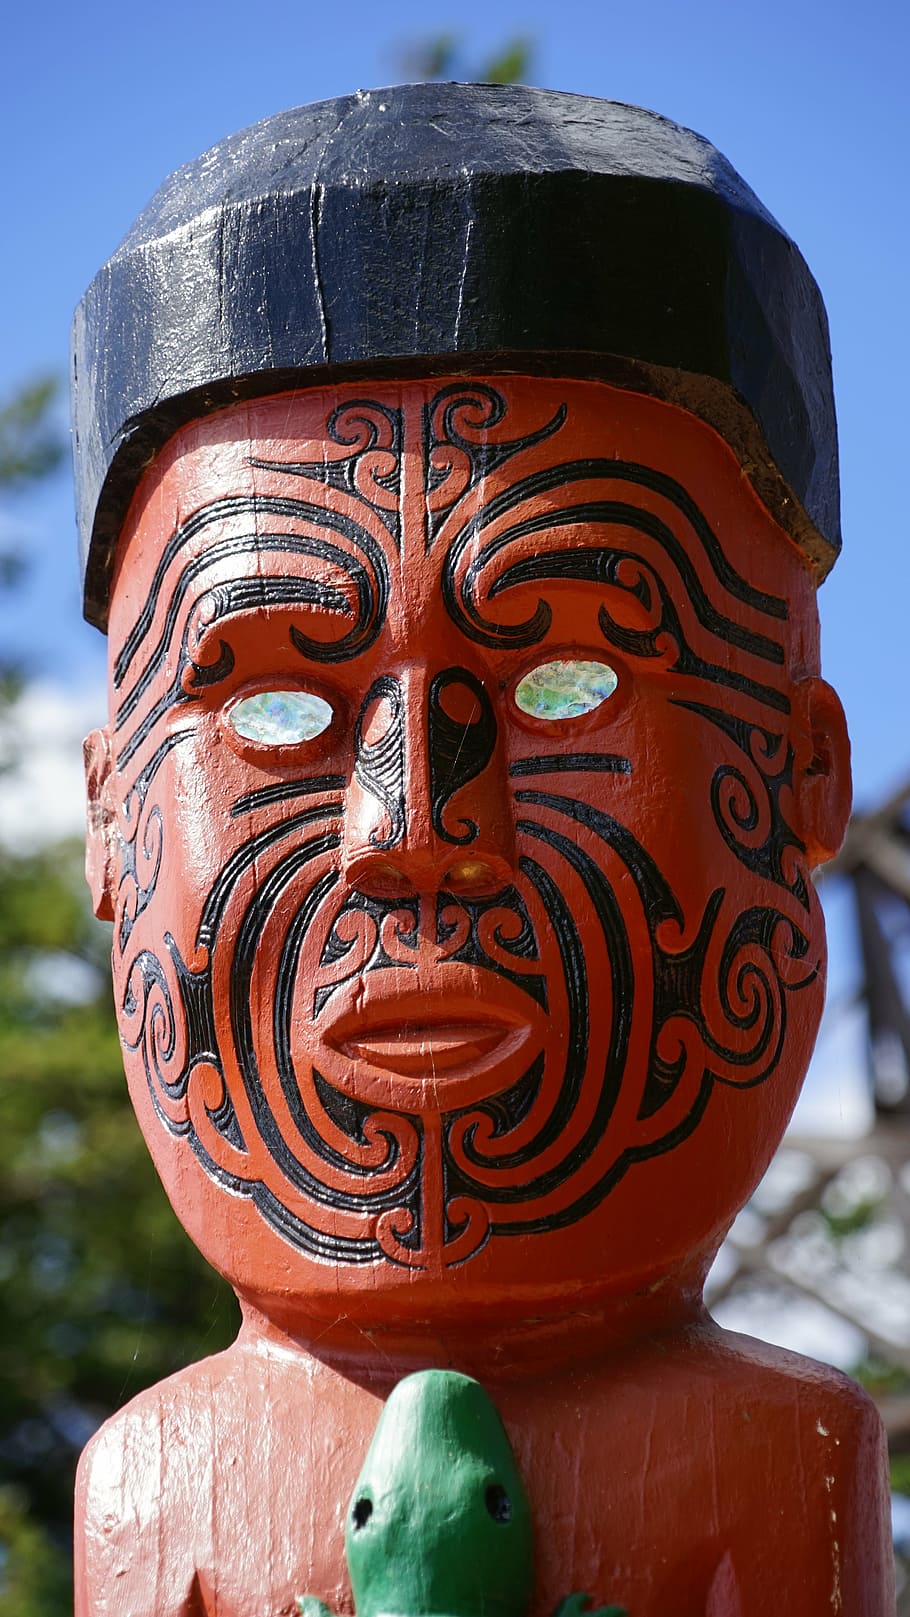 maori figure, carving, figure, arts crafts, holzfigur, new zealand, craft, face, ornament, maori